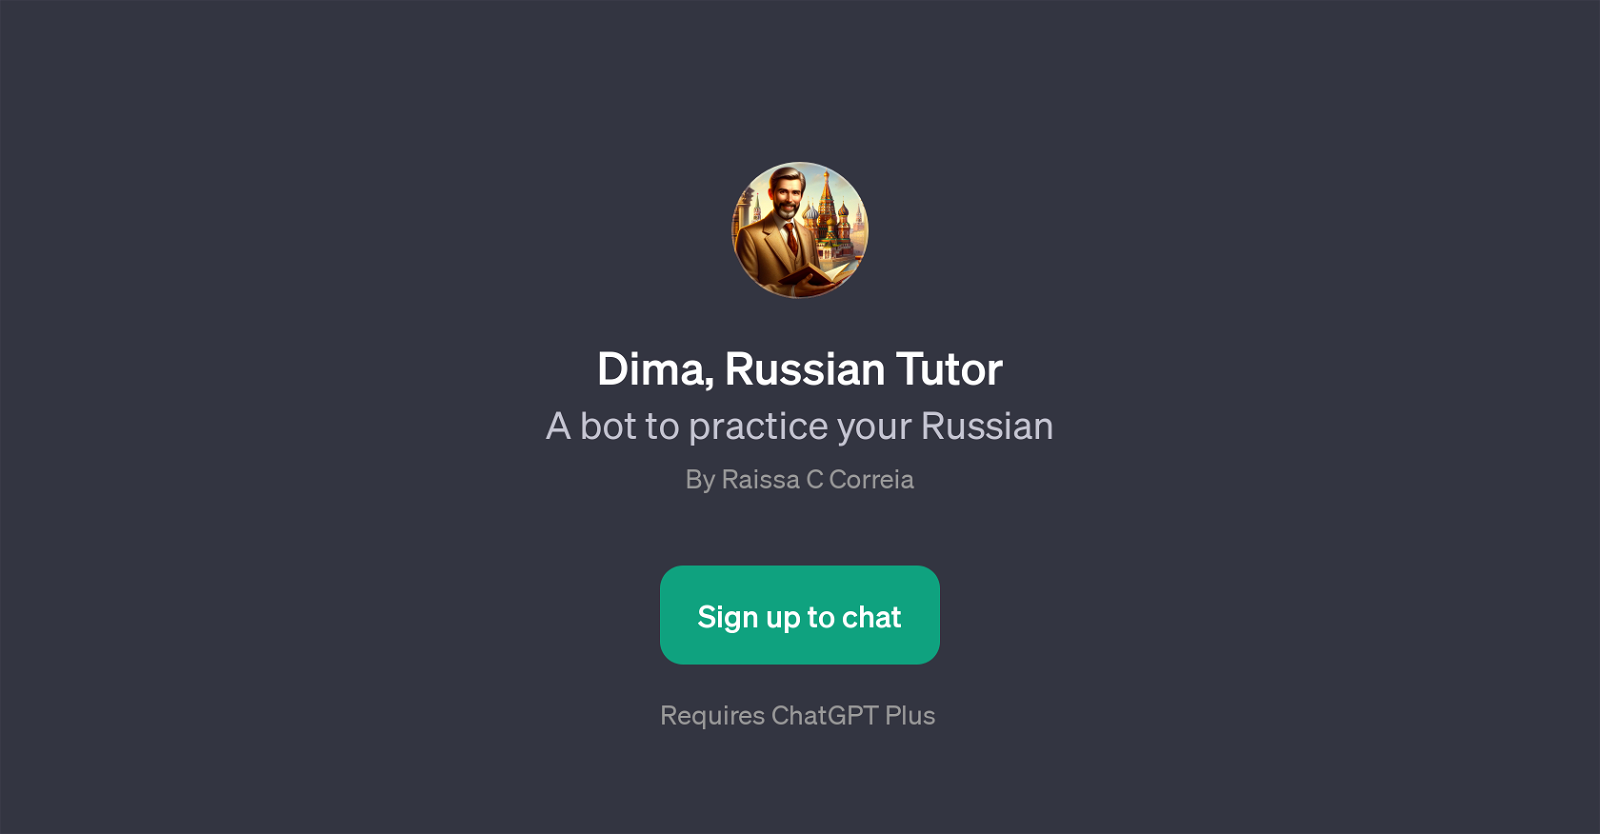 Dima, Russian Tutor website